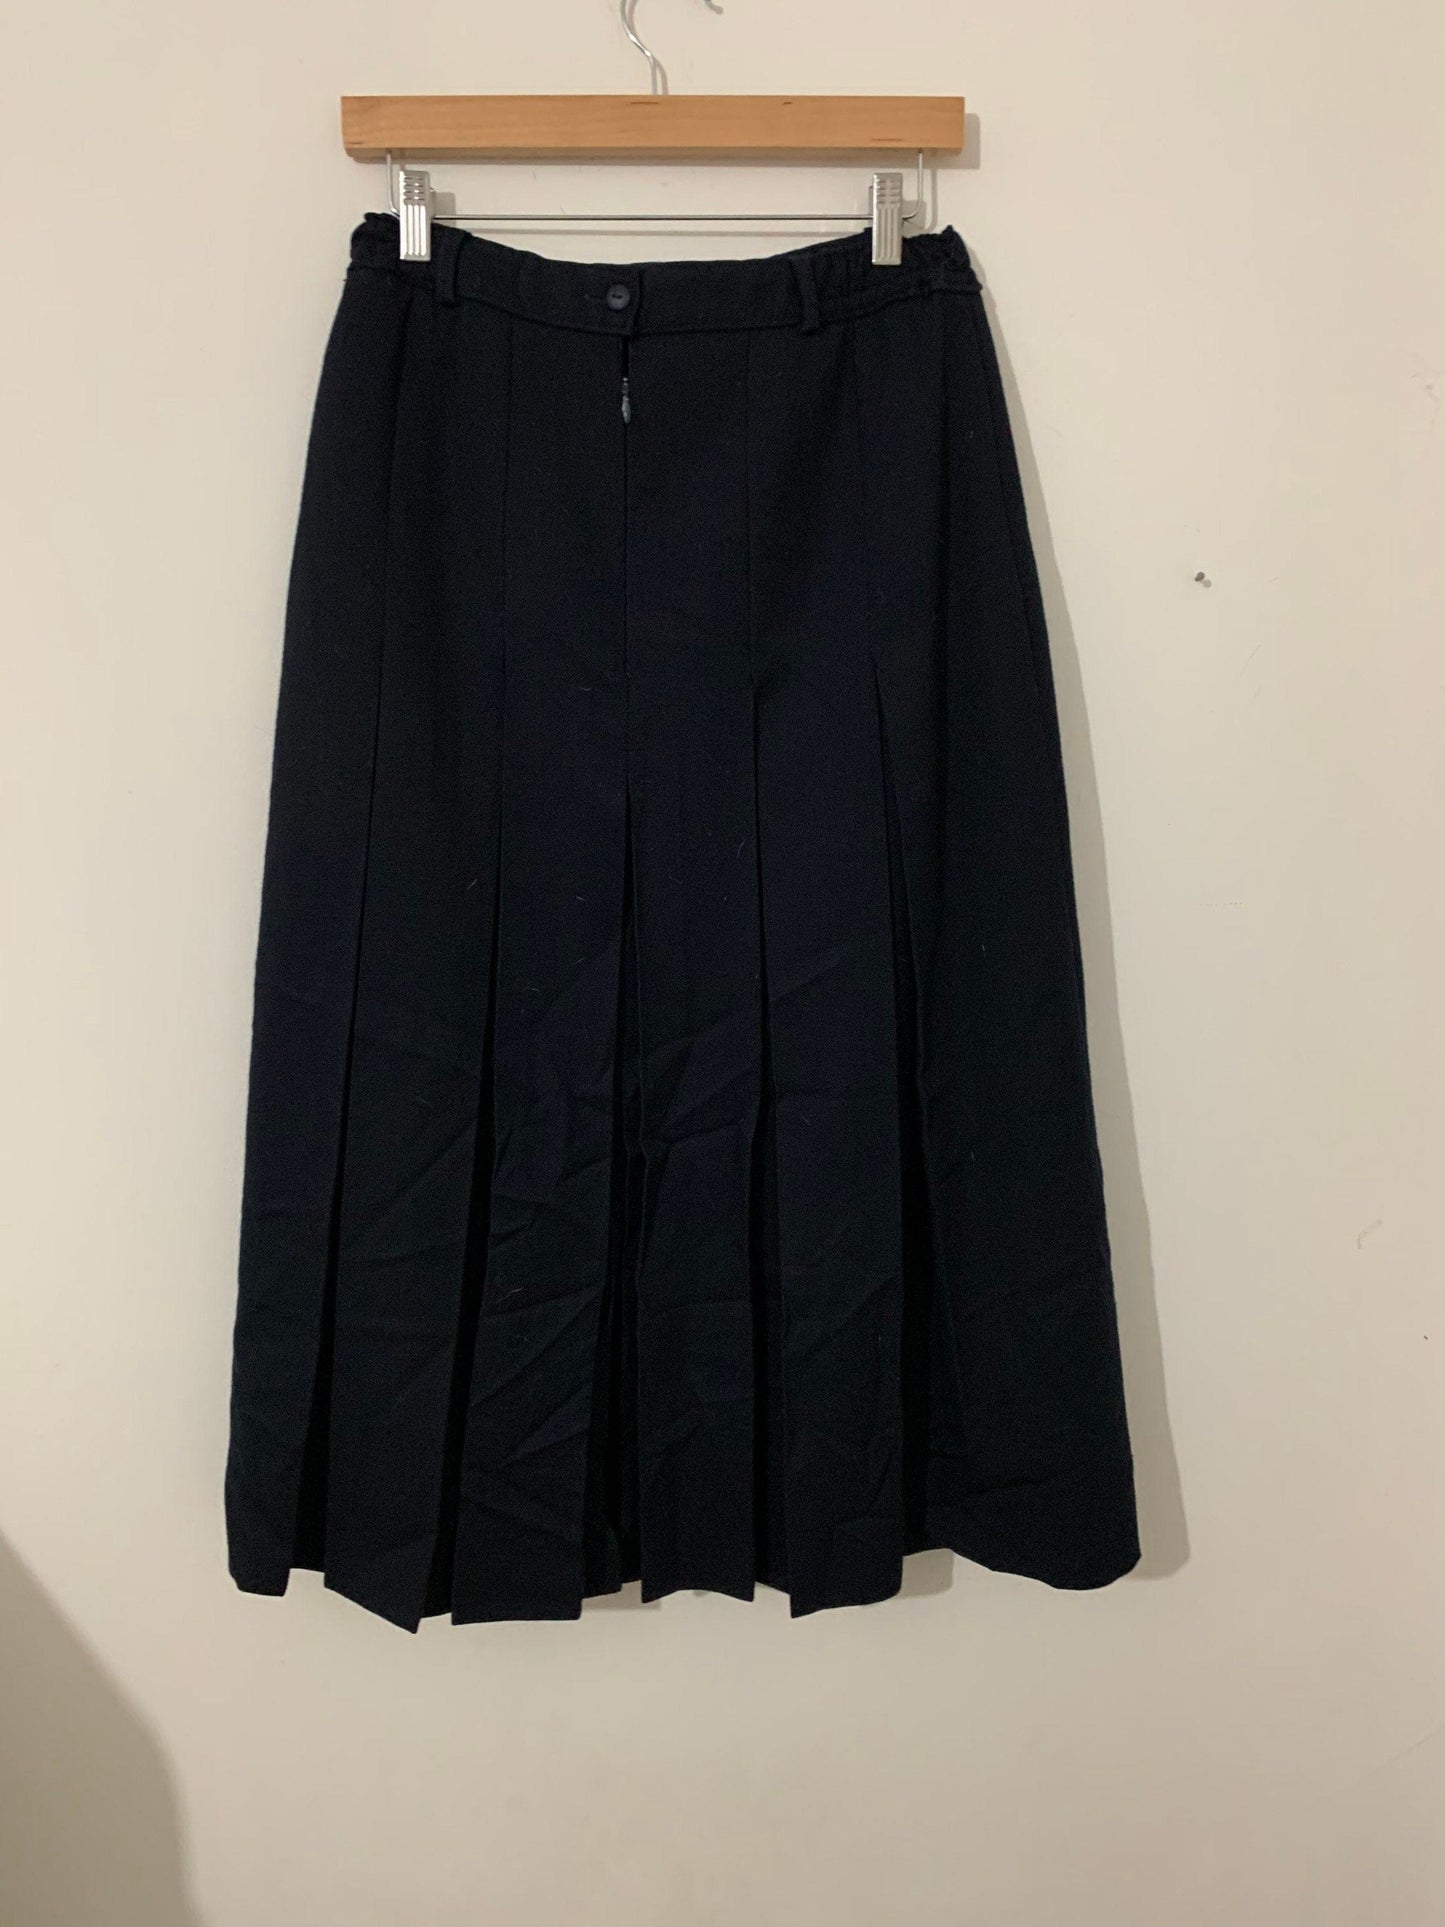 Vintage Navy Blue Pencil Skirt Knee Length  UK Size 12 - Straven